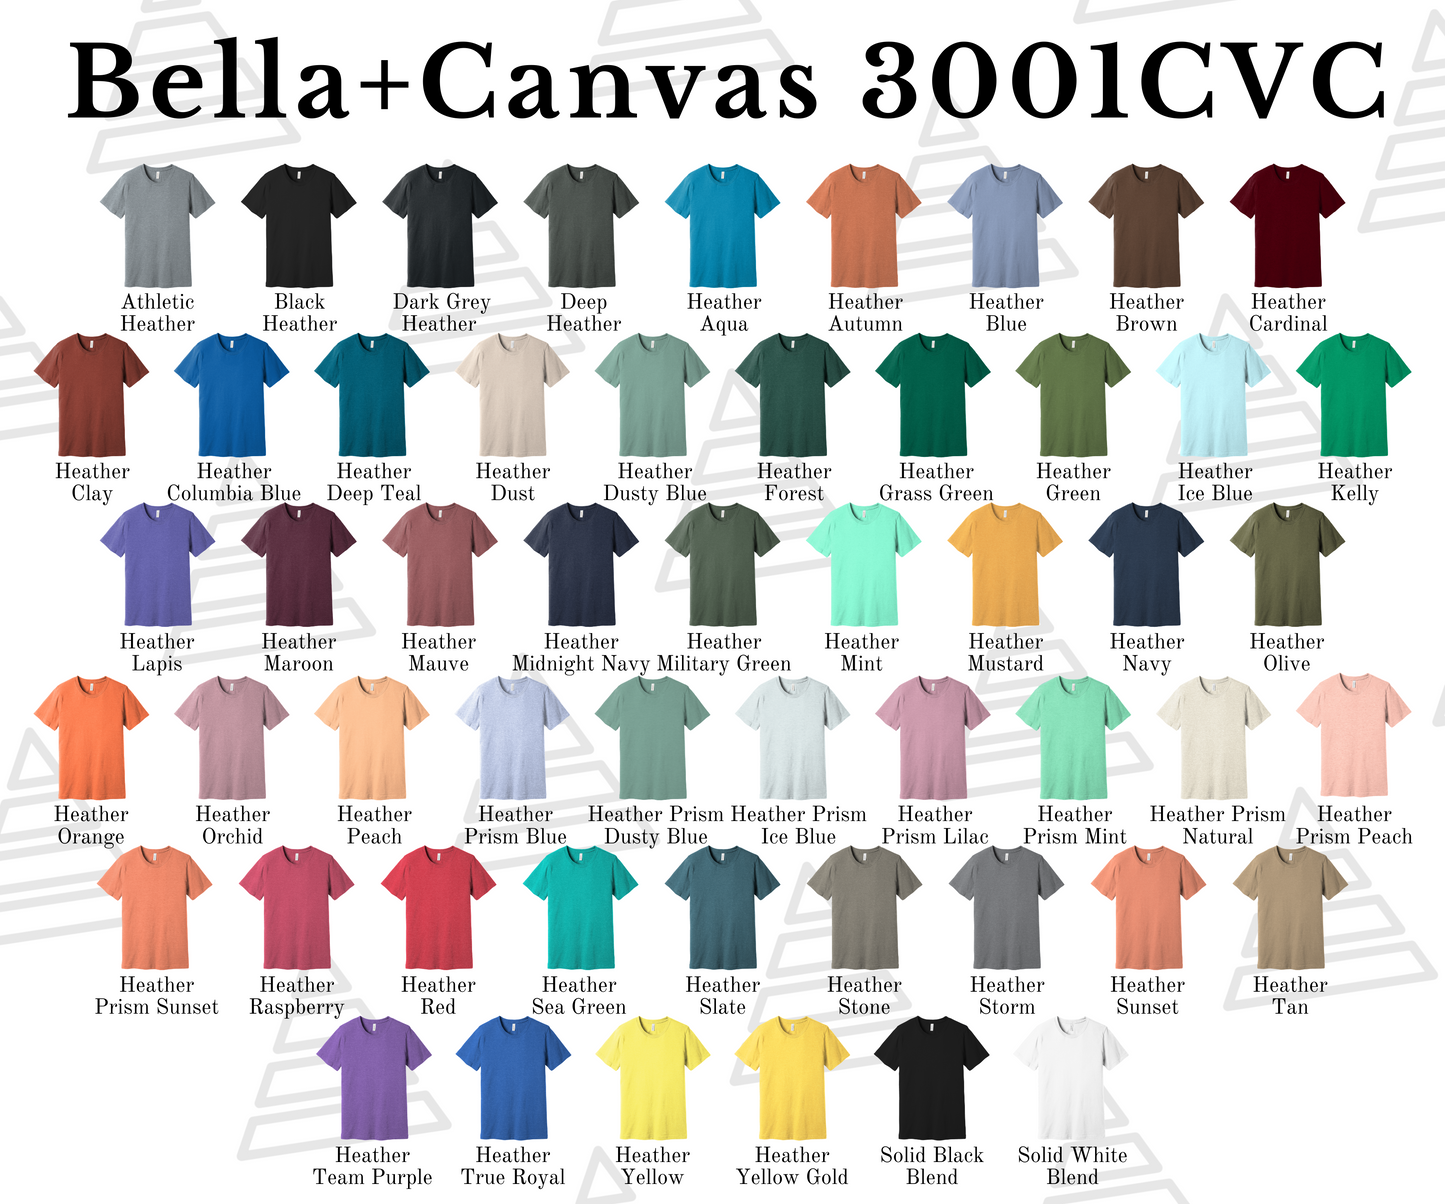 Bella Canvas 3001CVC / Blank or Custom